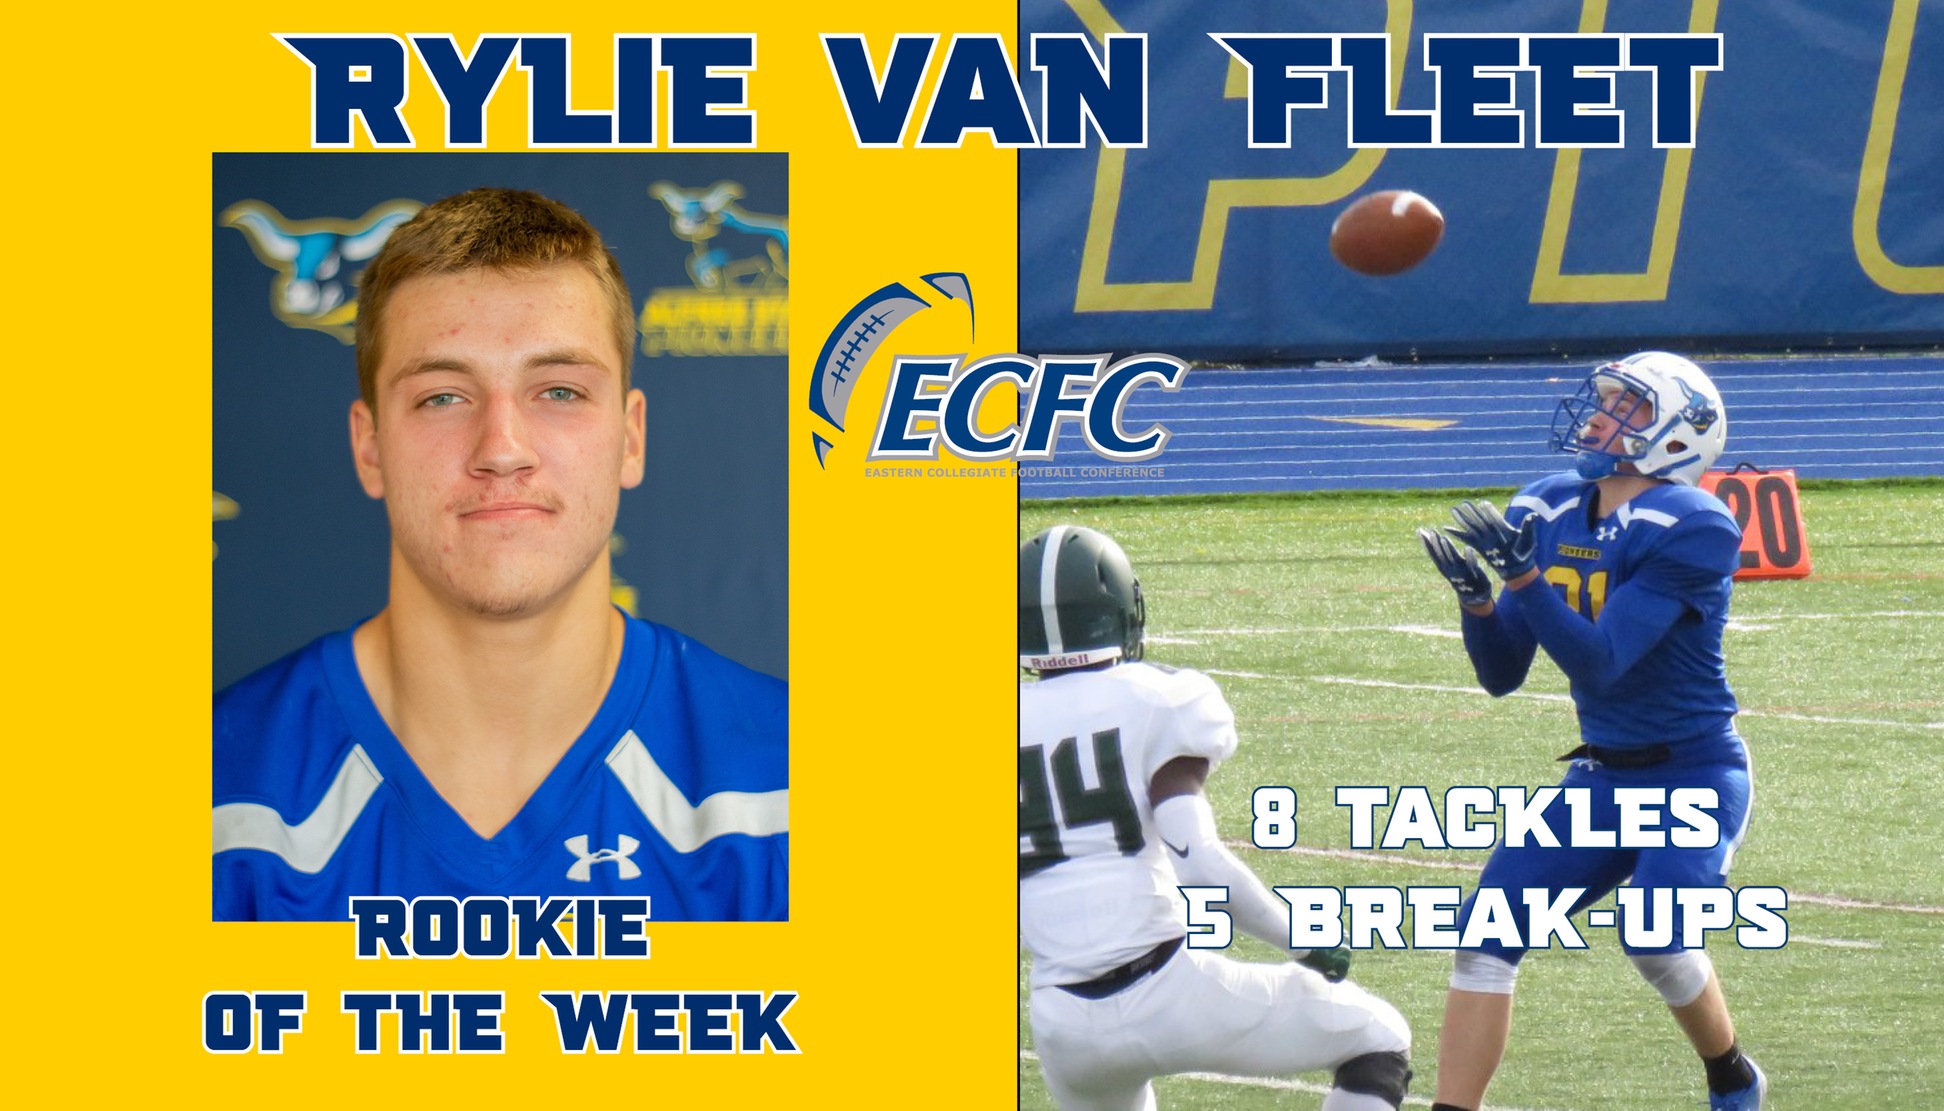 Rylie Vann Fleet has been named ECFC Rookie of the Week